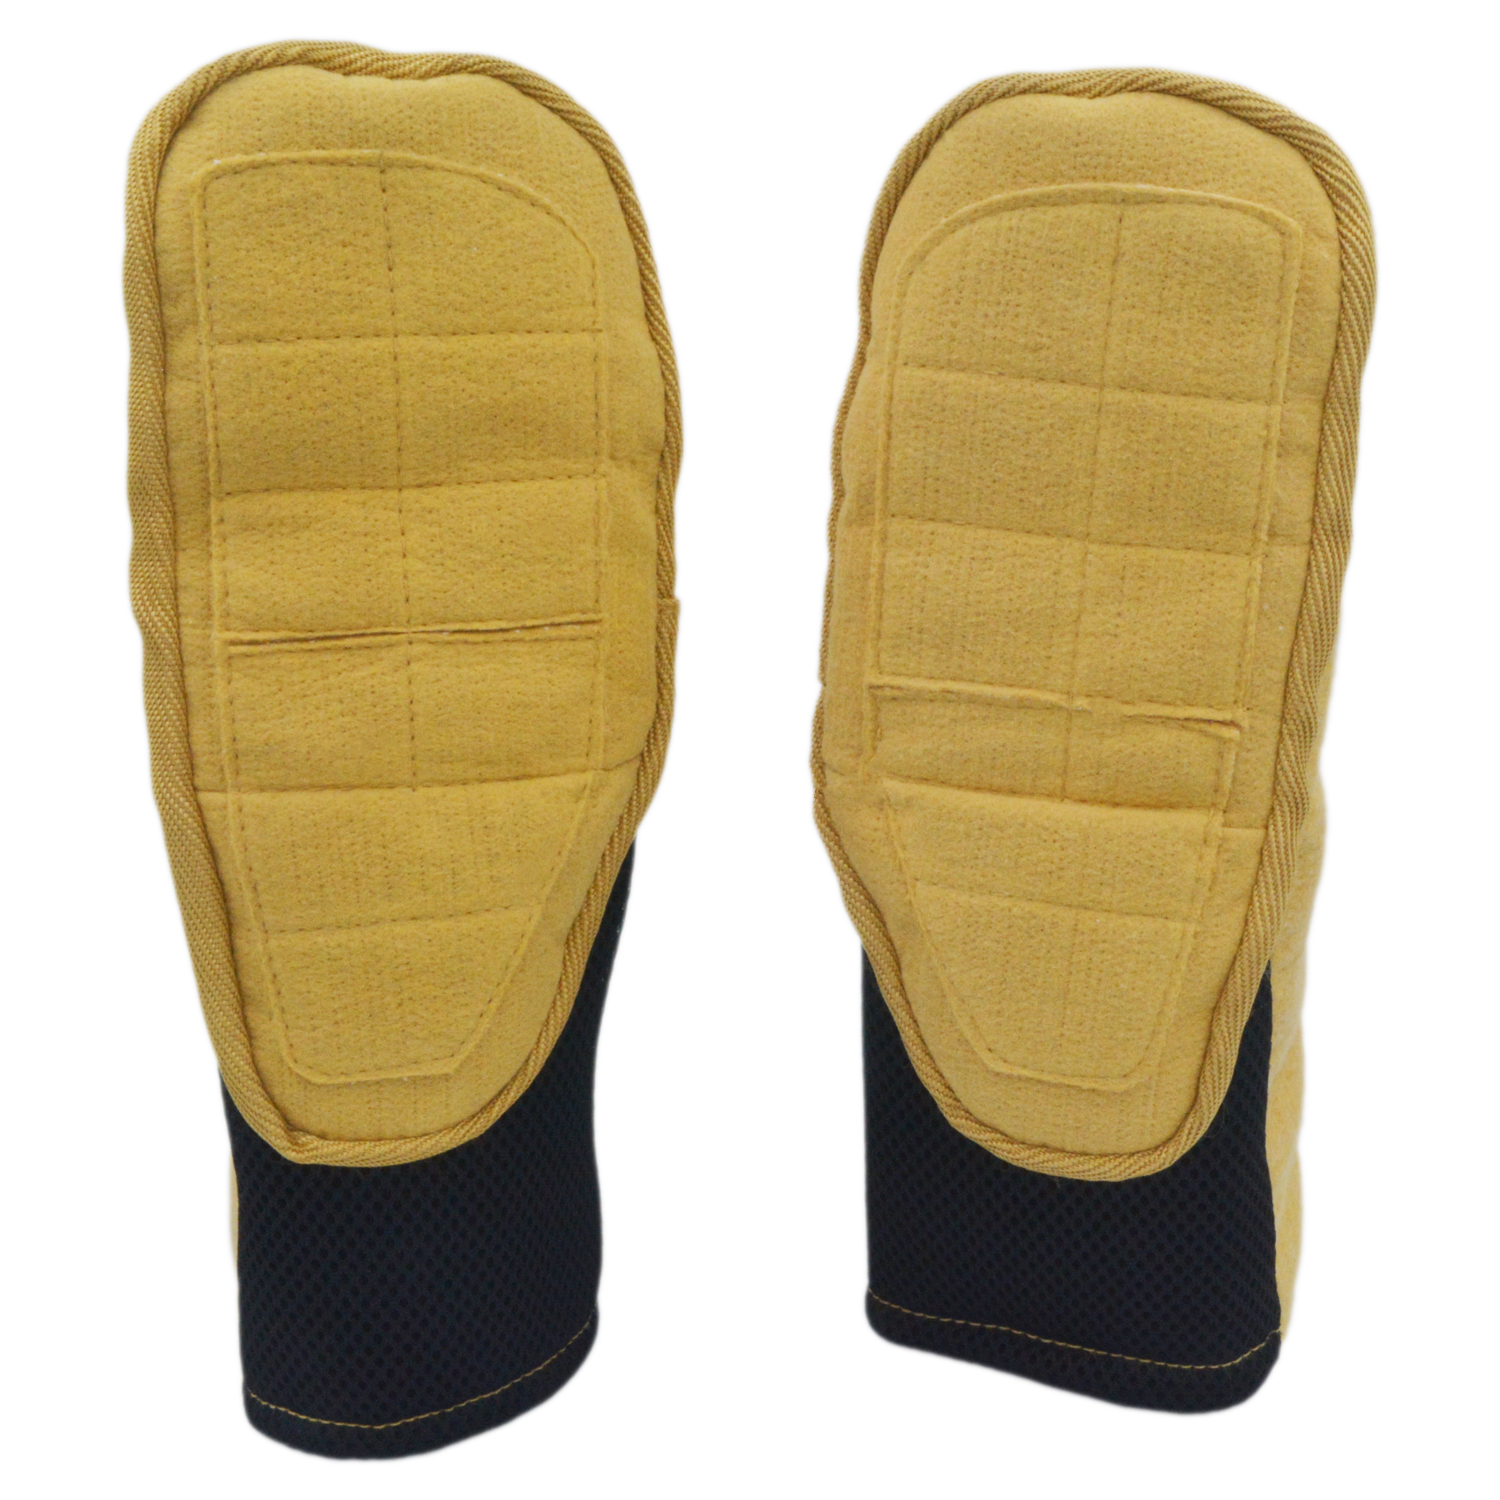 Kevlar 耐热手套 - 出色的温度保护